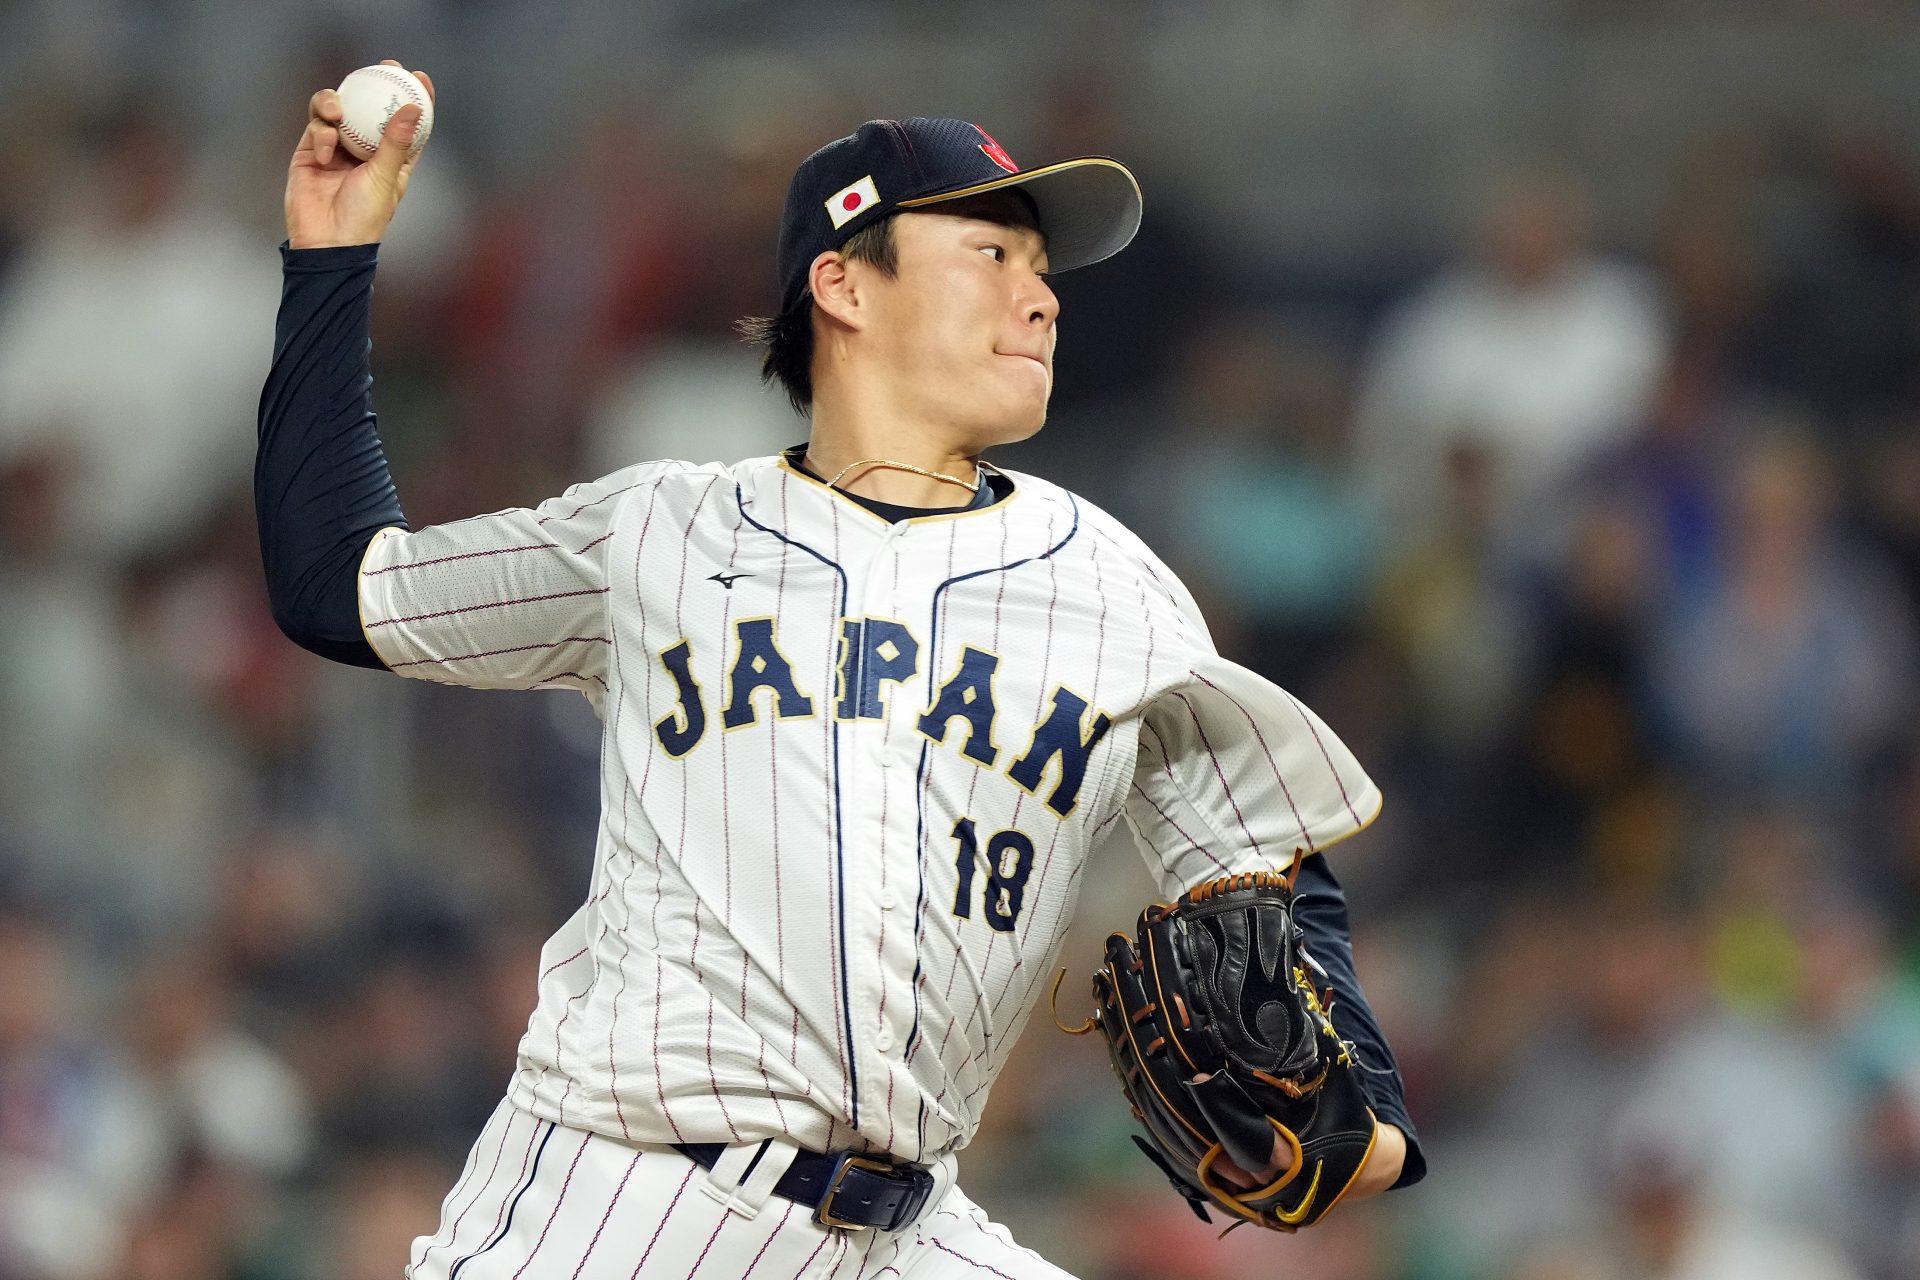 How each 'Japanese sensation' fared in their first MLB season